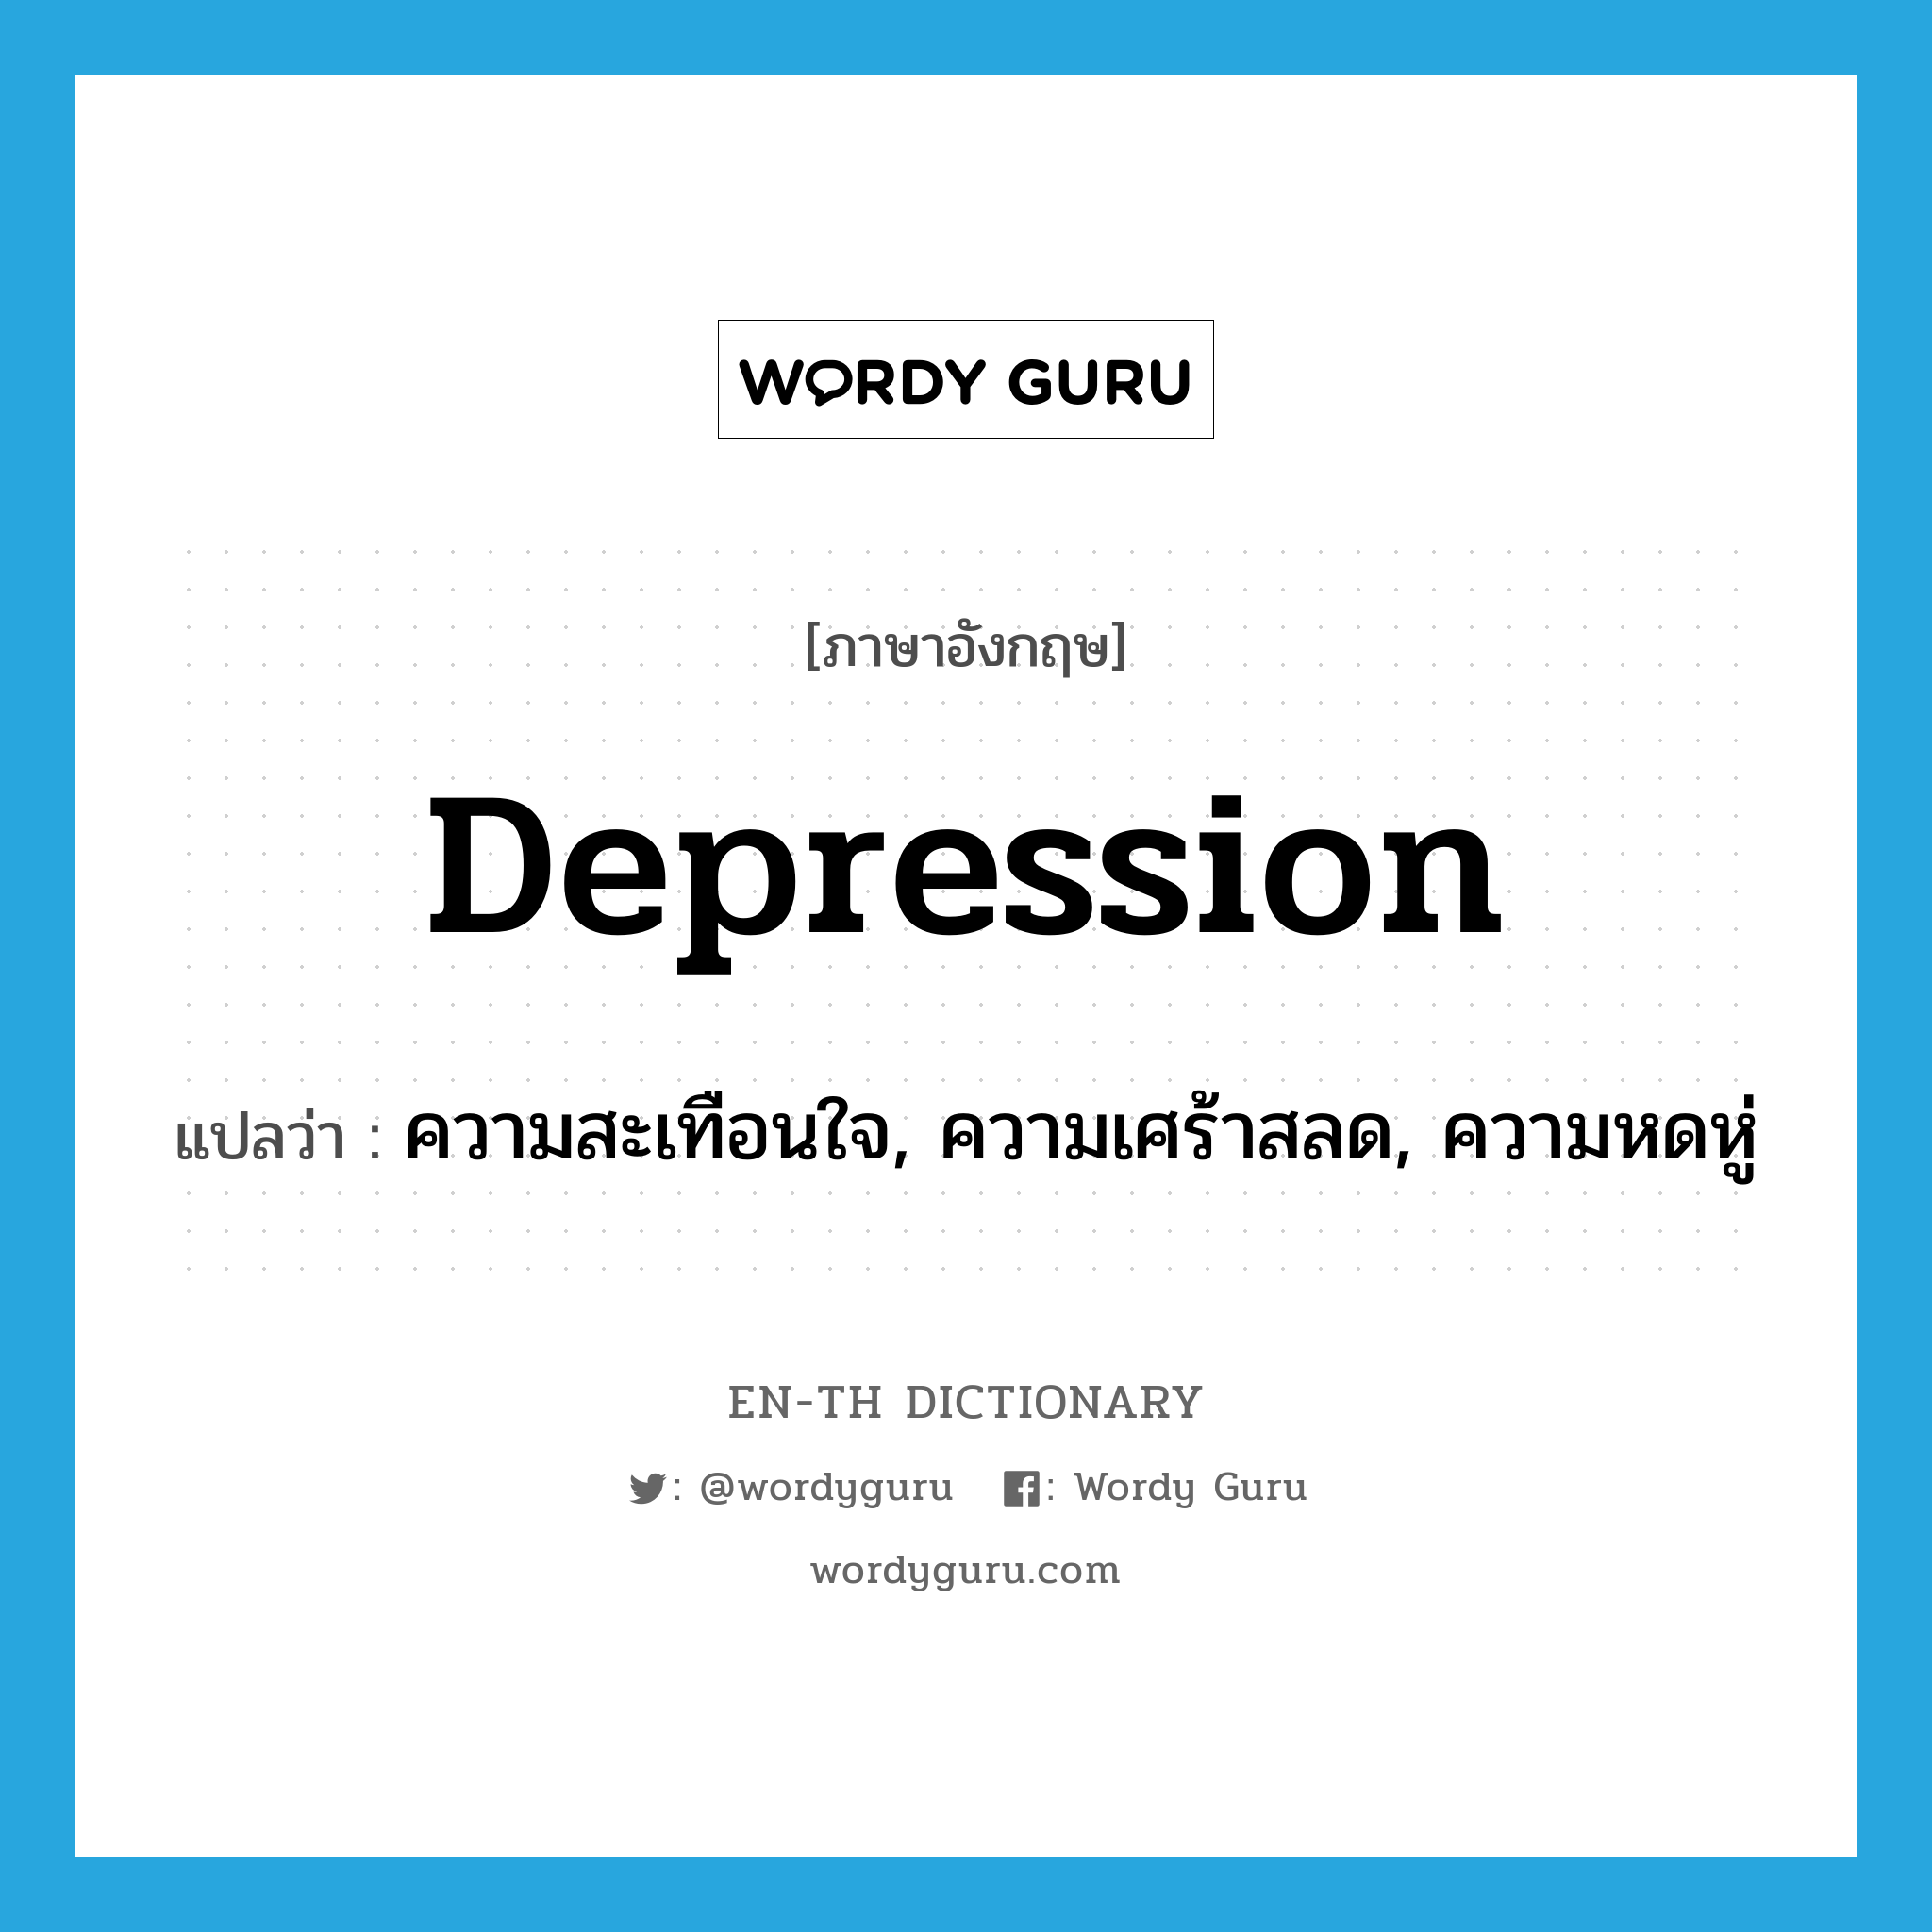 ความสะเทือนใจ, ความเศร้าสลด, ความหดหู่ ภาษาอังกฤษ?, คำศัพท์ภาษาอังกฤษ ความสะเทือนใจ, ความเศร้าสลด, ความหดหู่ แปลว่า depression ประเภท N หมวด N